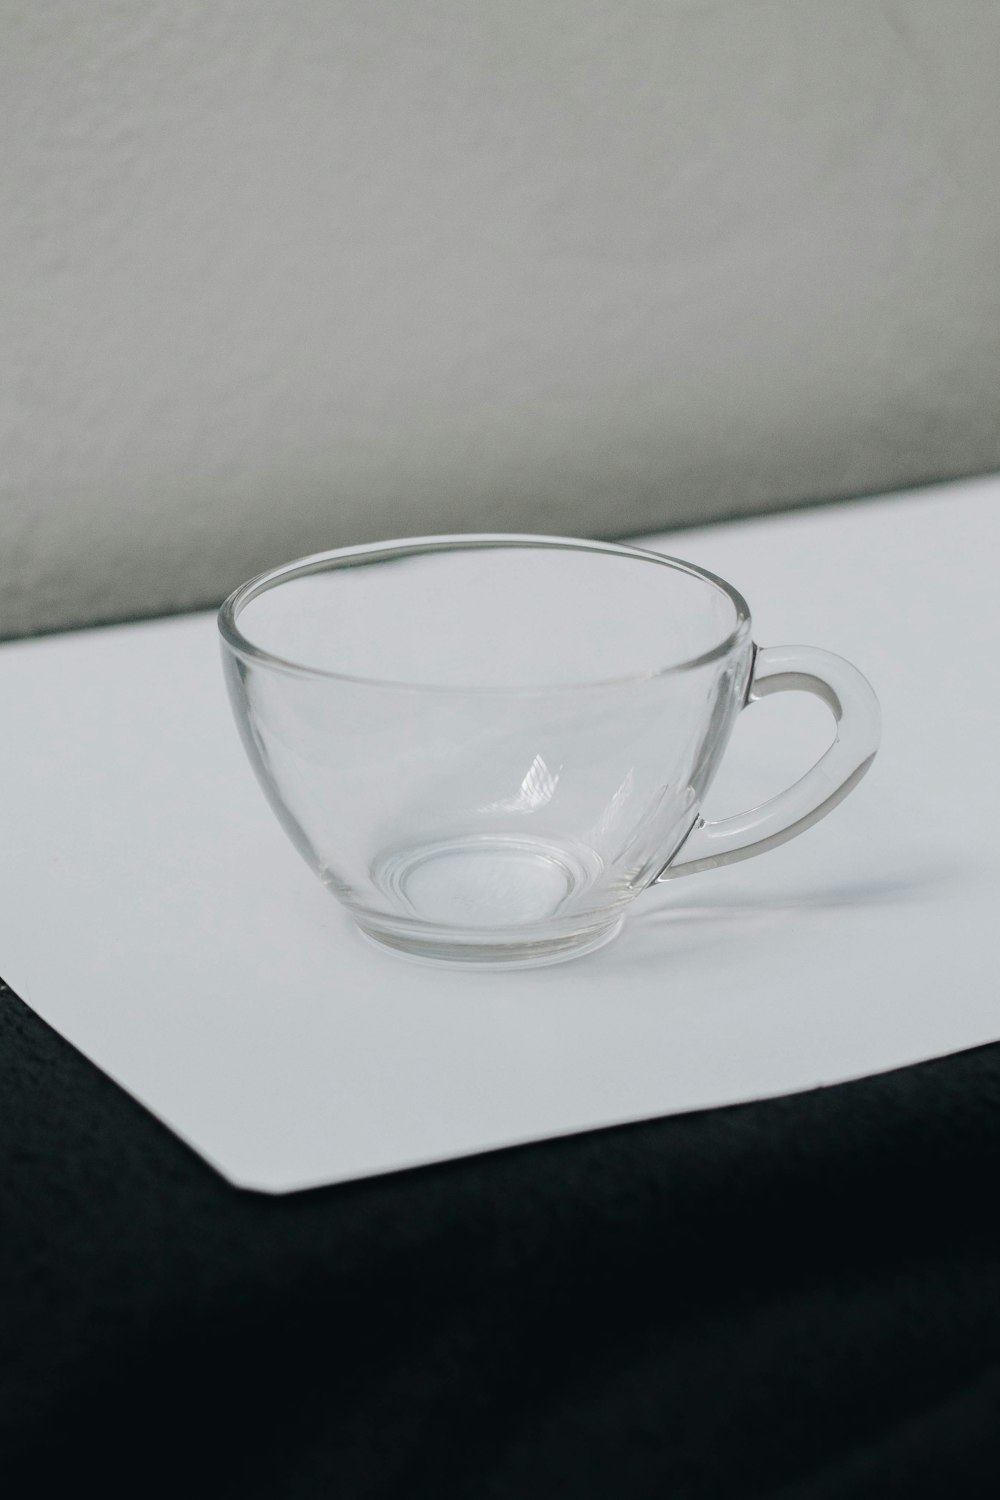 흰색 티슈 페이퍼에 투명 유리 컵